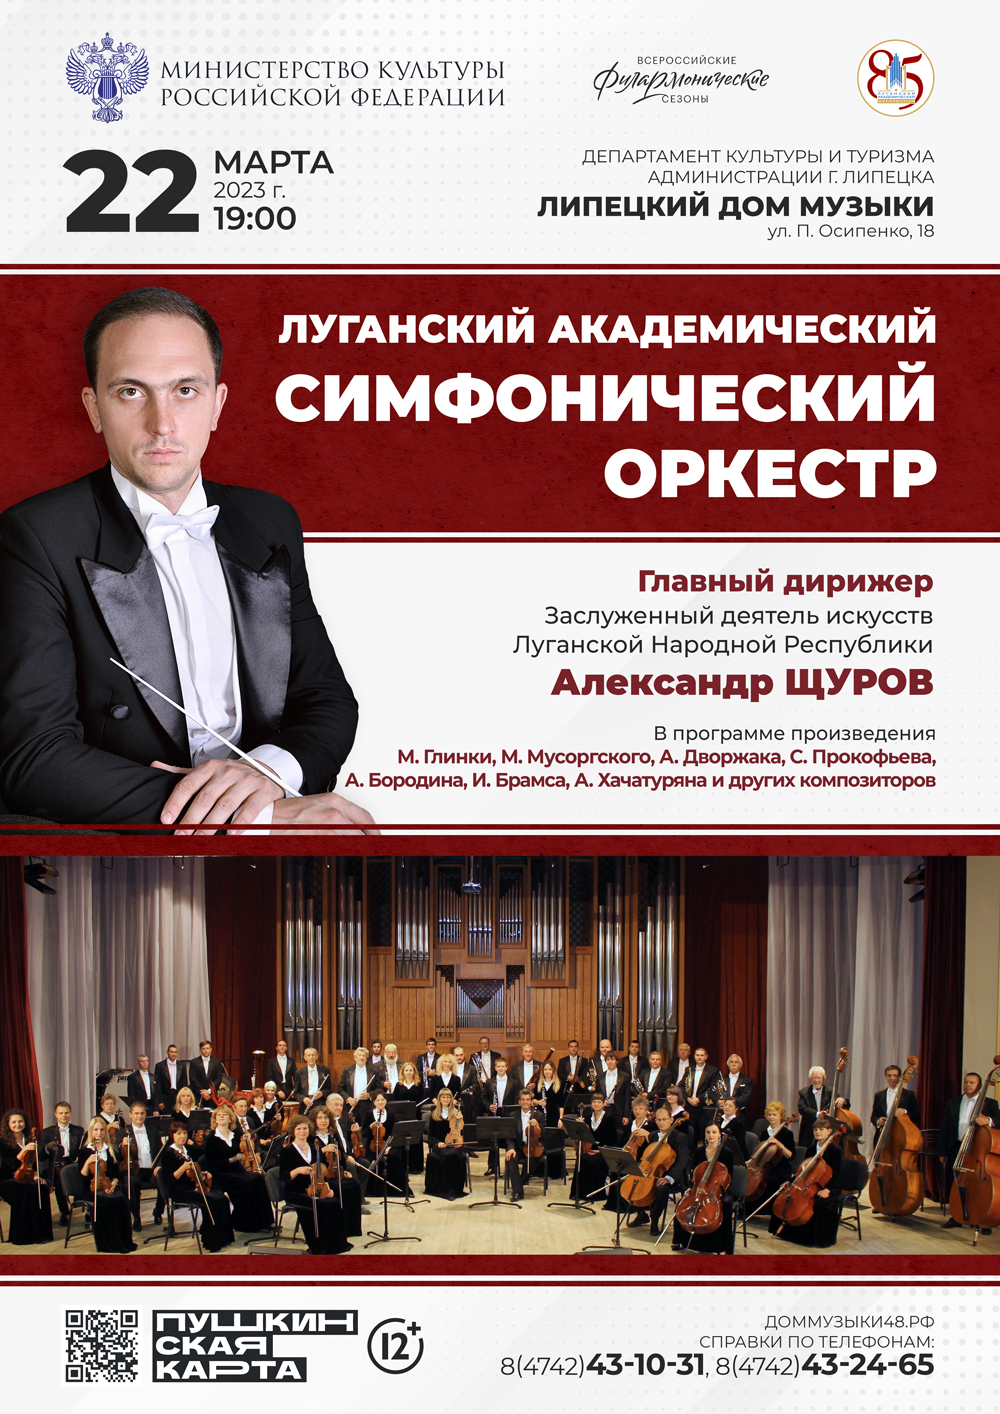 Луганский академический симфонический оркестр (22.03.2023 в 19:00)